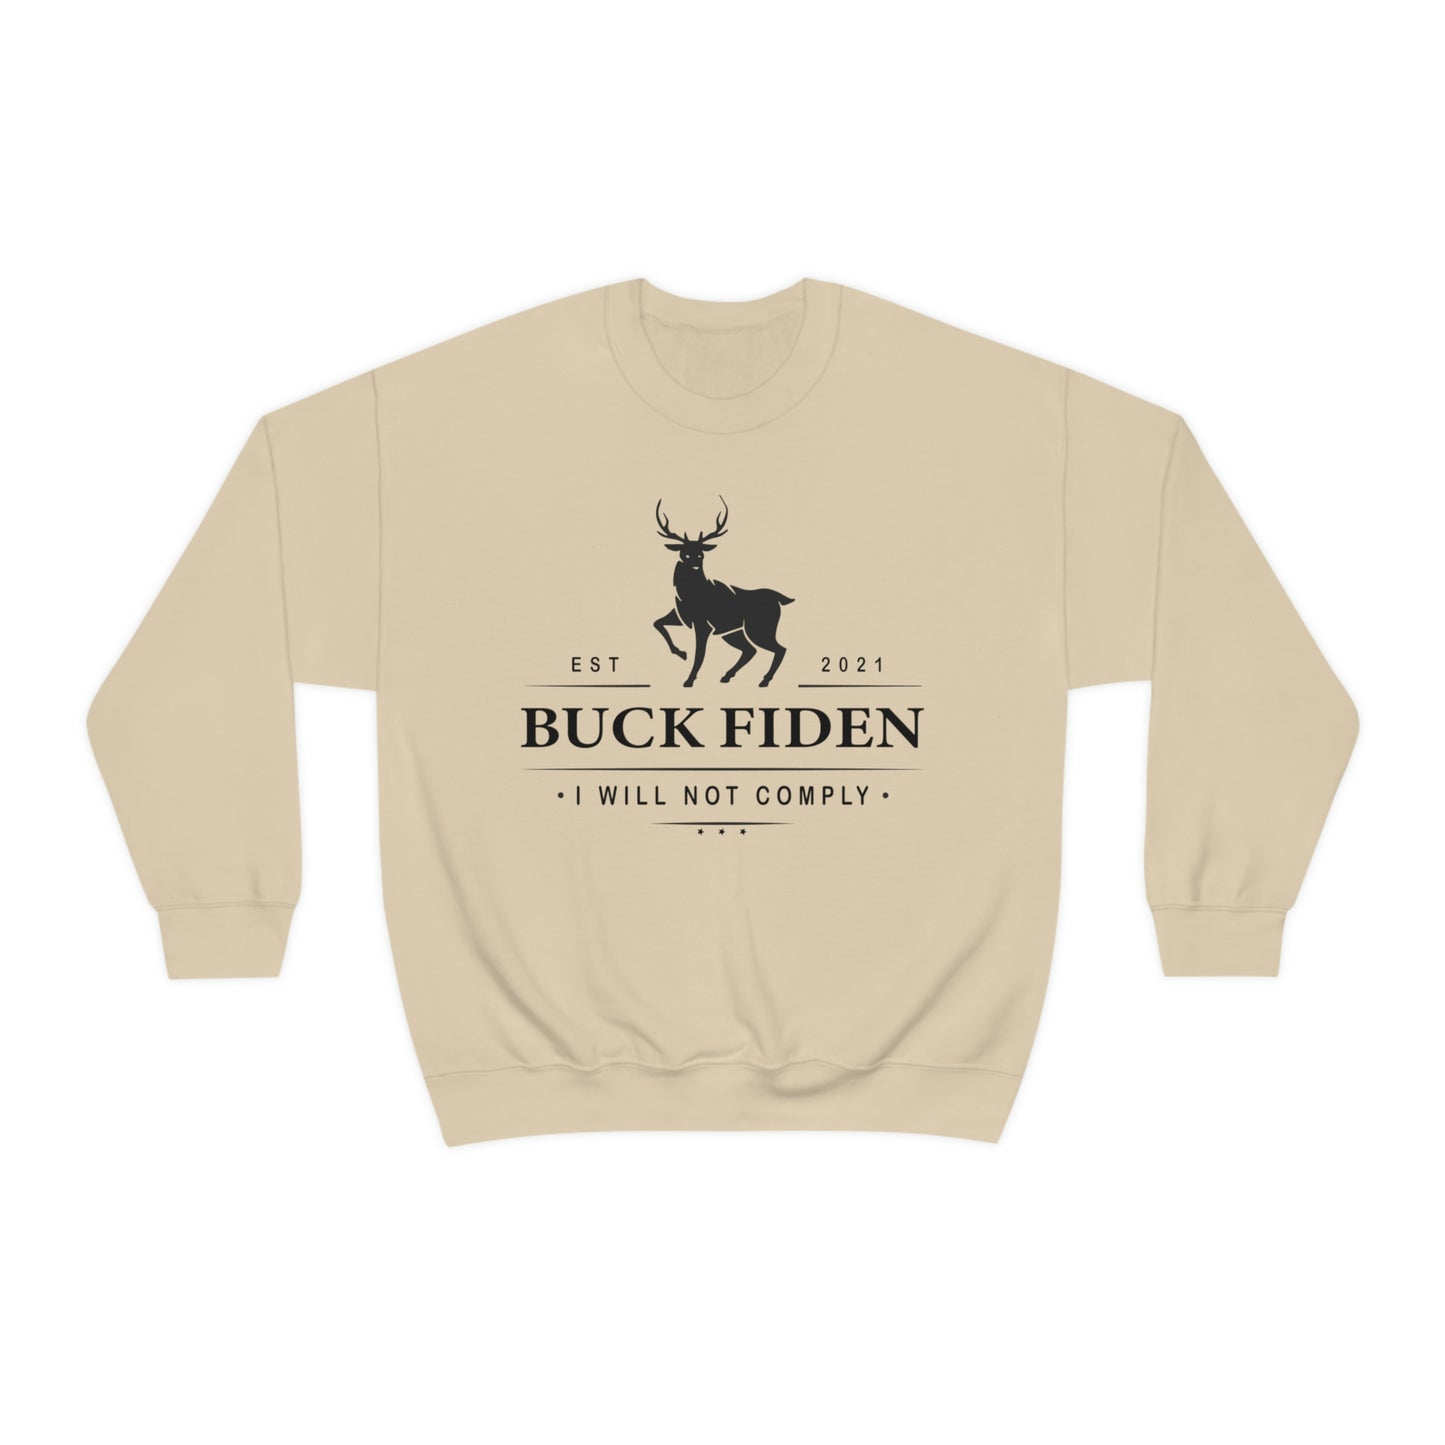 I Will Not Comply Sweatshirt, Buck Fiden Shirt